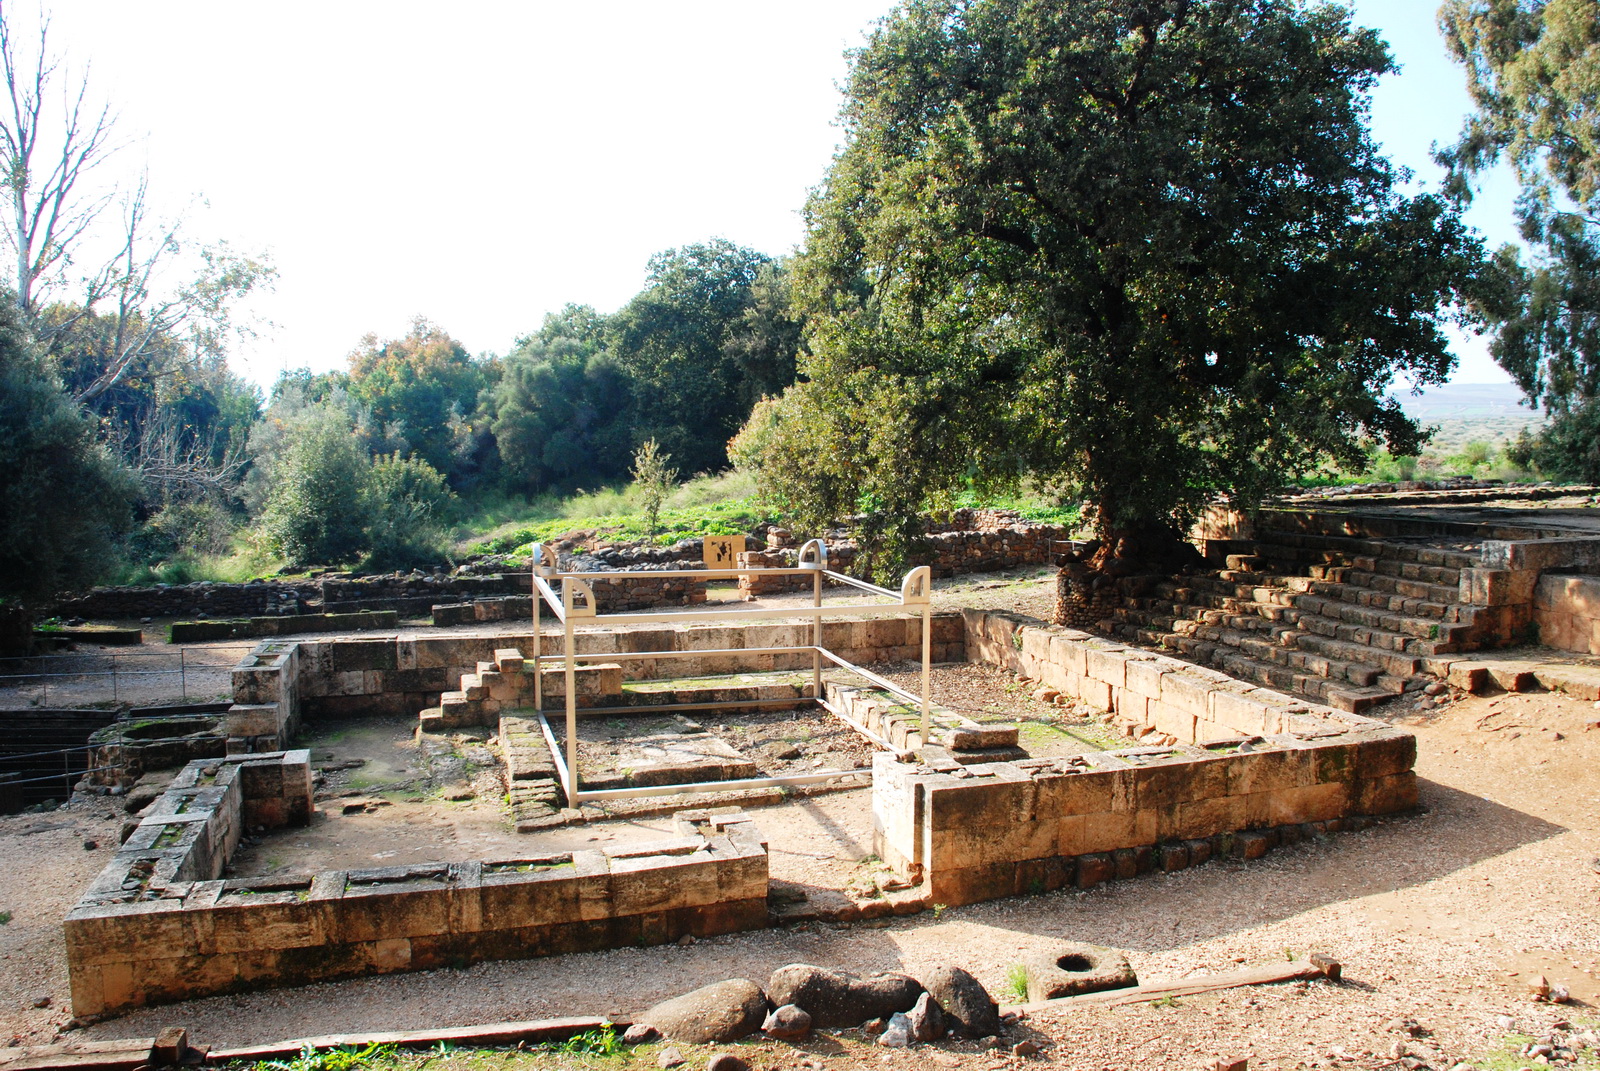 דן - אתר הפולחן (פולחן העגלים) שהקים ירבעם (כ 900 לפני הספירה) בדן